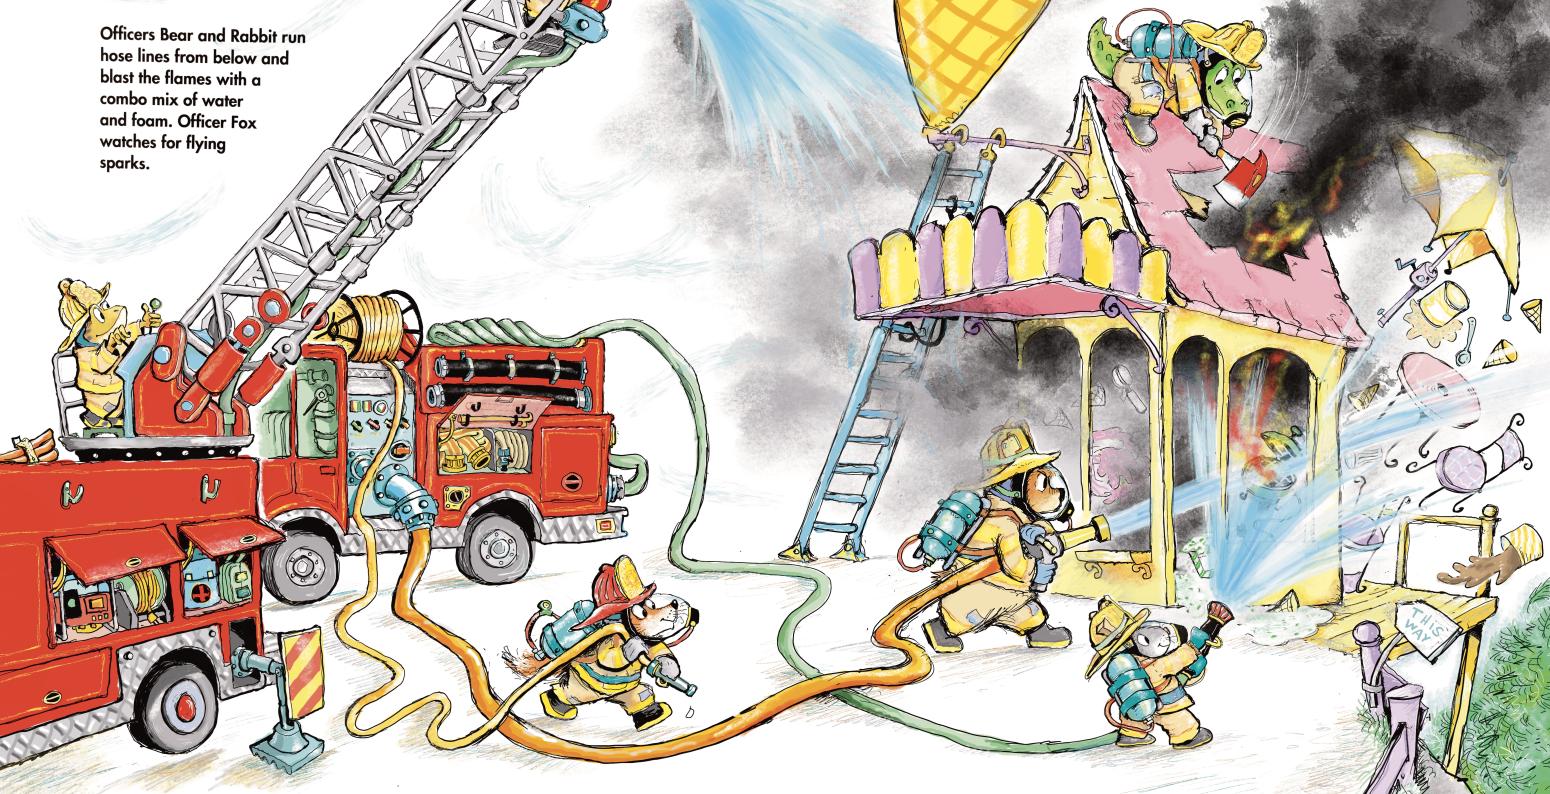 Firefighter animals on a firetruck hosing down an ice cream shop on fire.